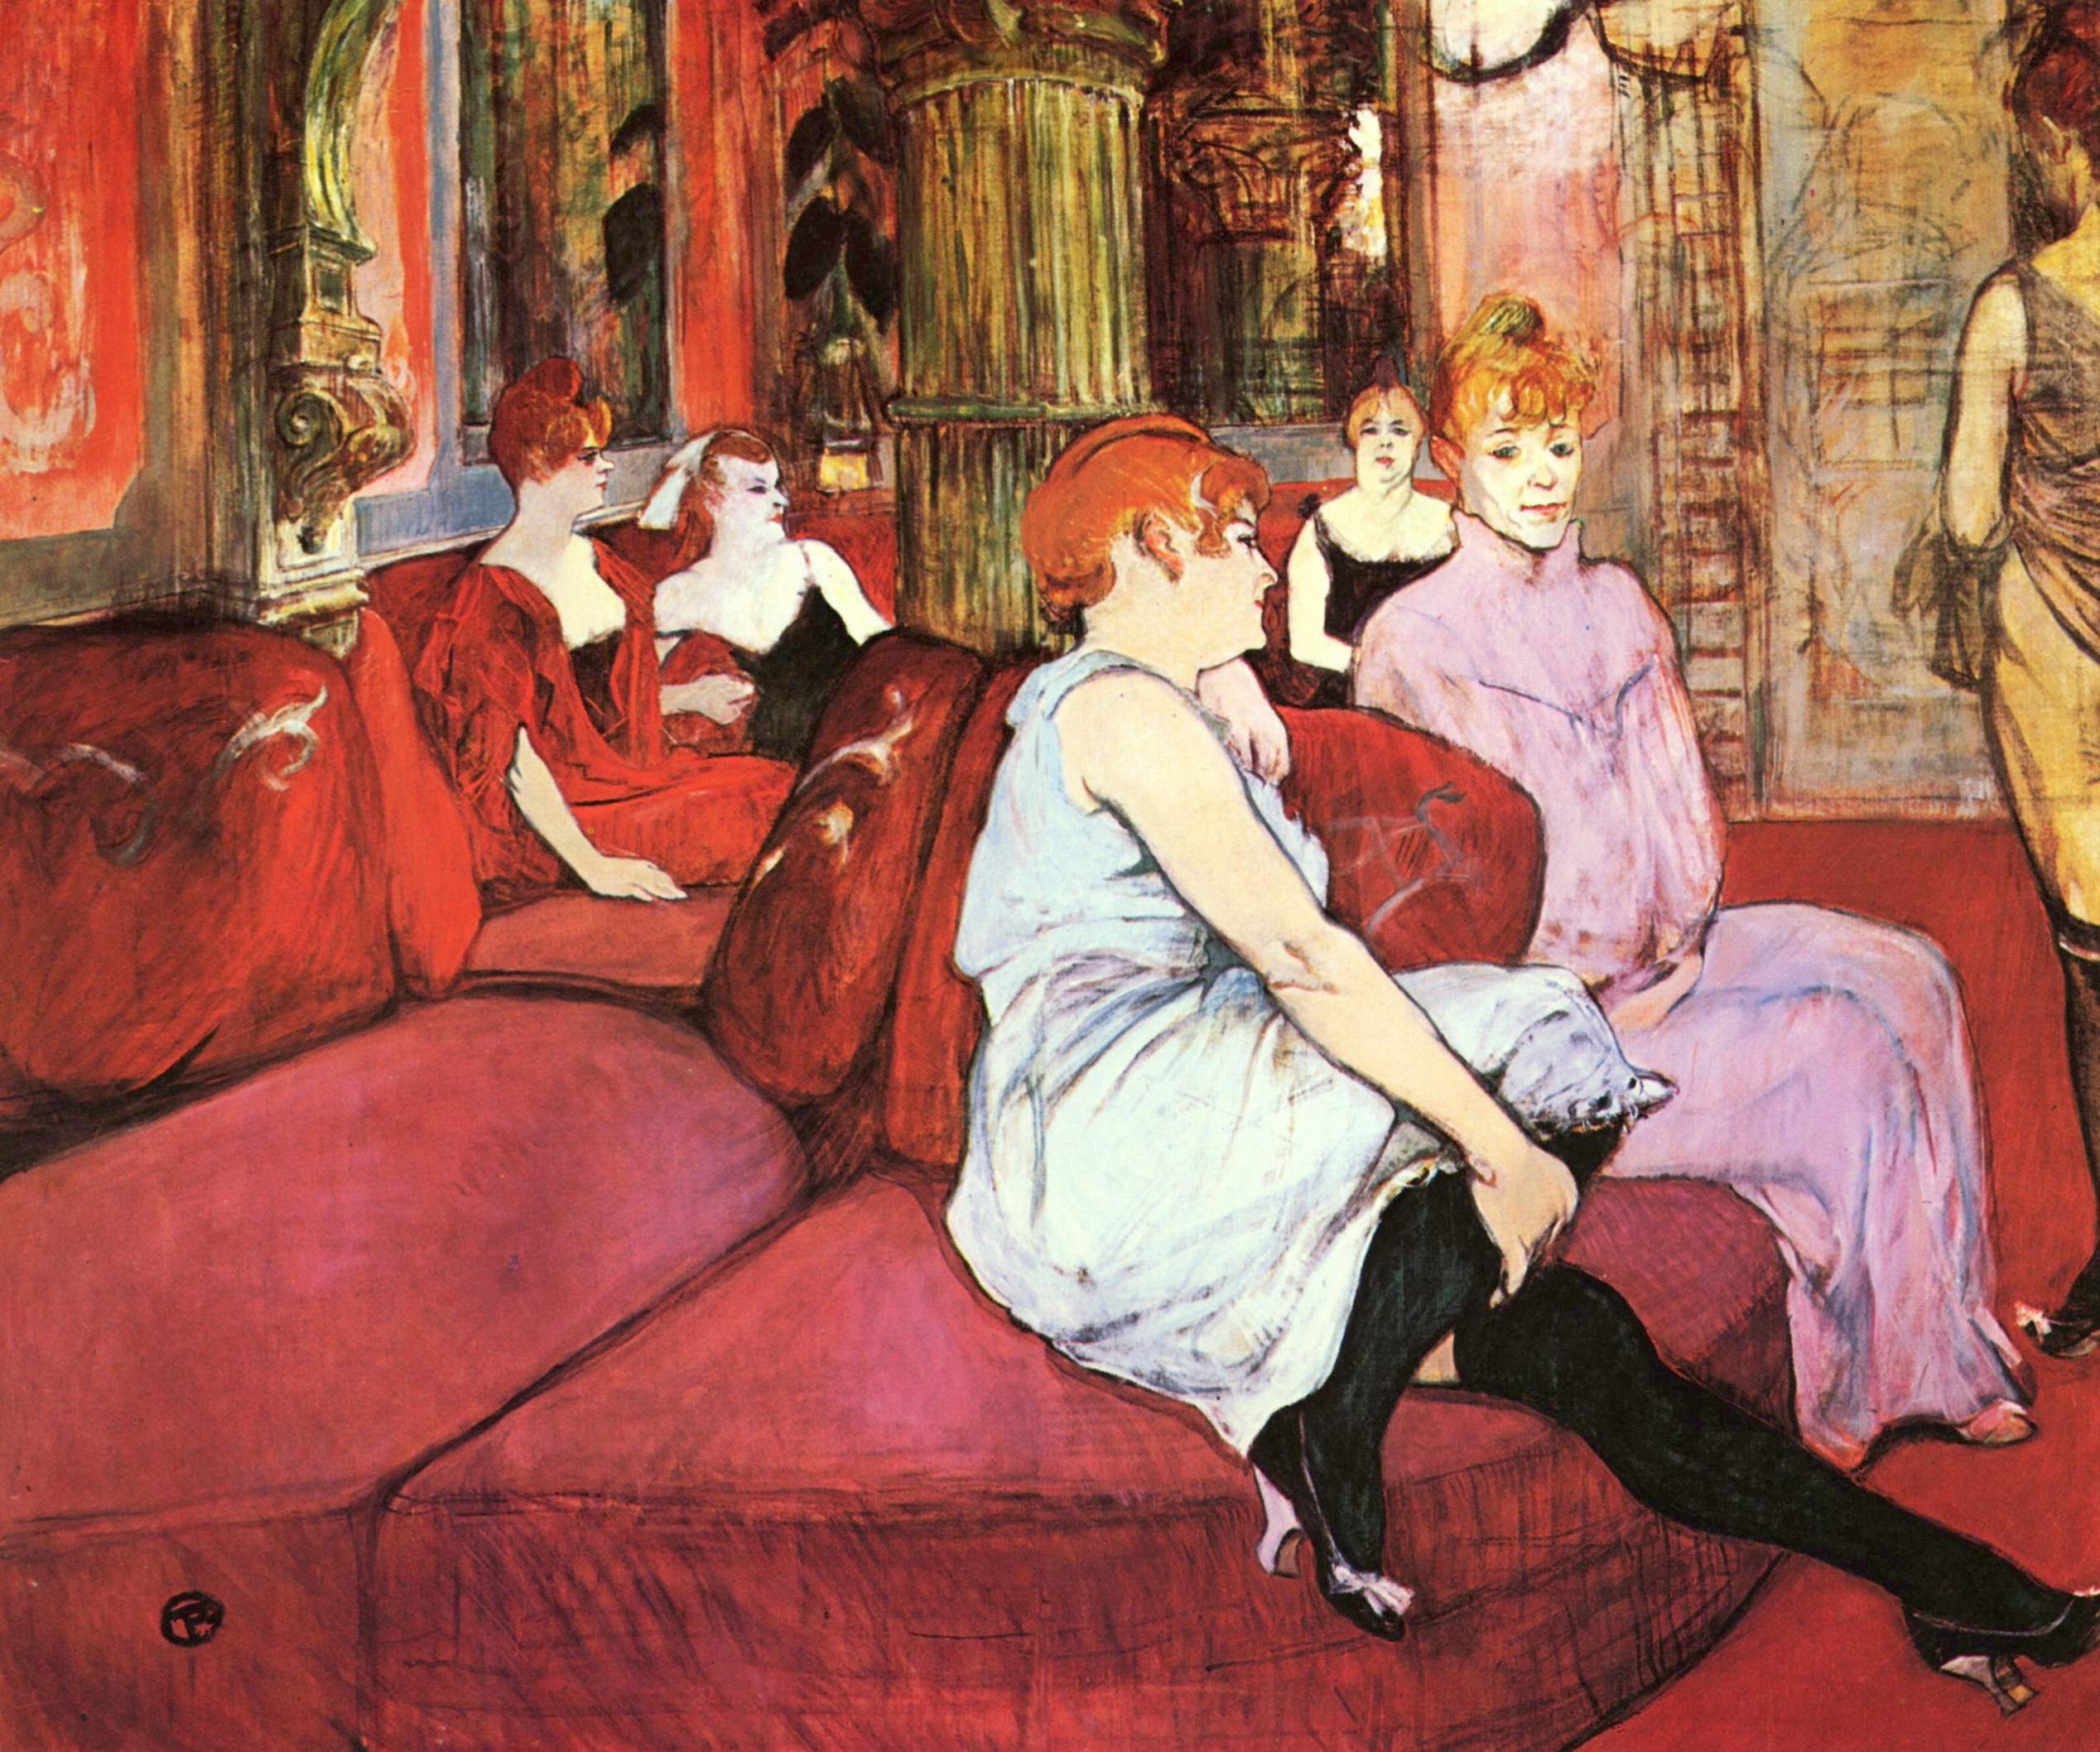 Salon de la rue des Moulins by Henri de Toulouse-Lautrec - 1894 - 111.5 × 132.5 cm 